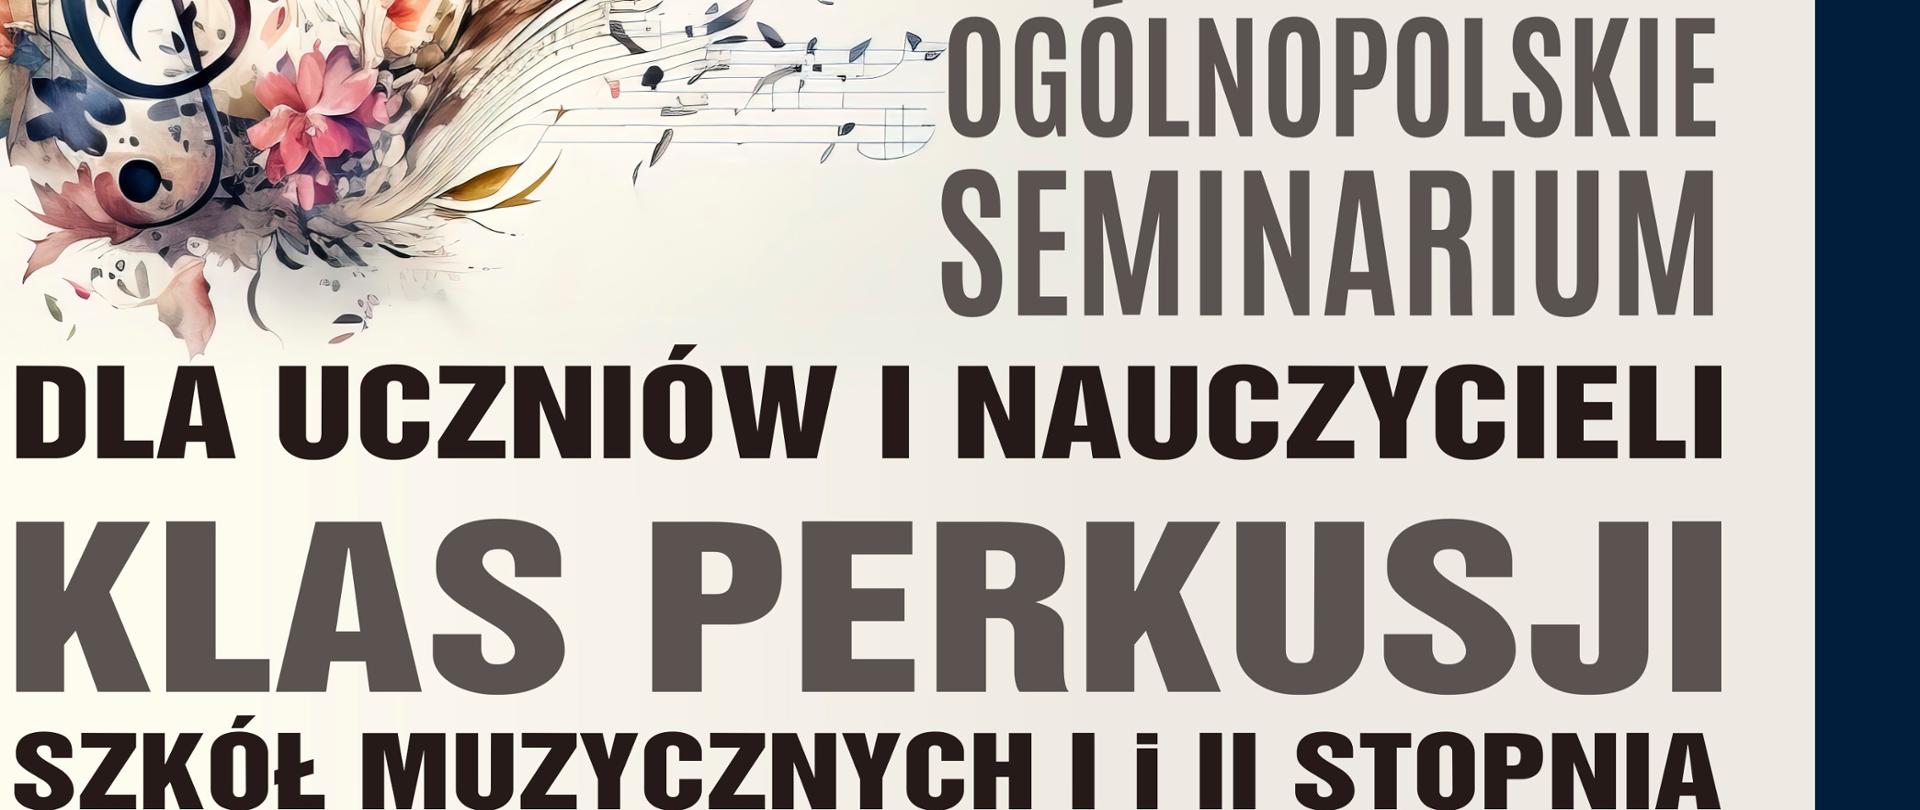 Plakat na seminarium perkusyjne w kolorze kremowo-brązowo-granatowym z informacją o wydarzeniu.